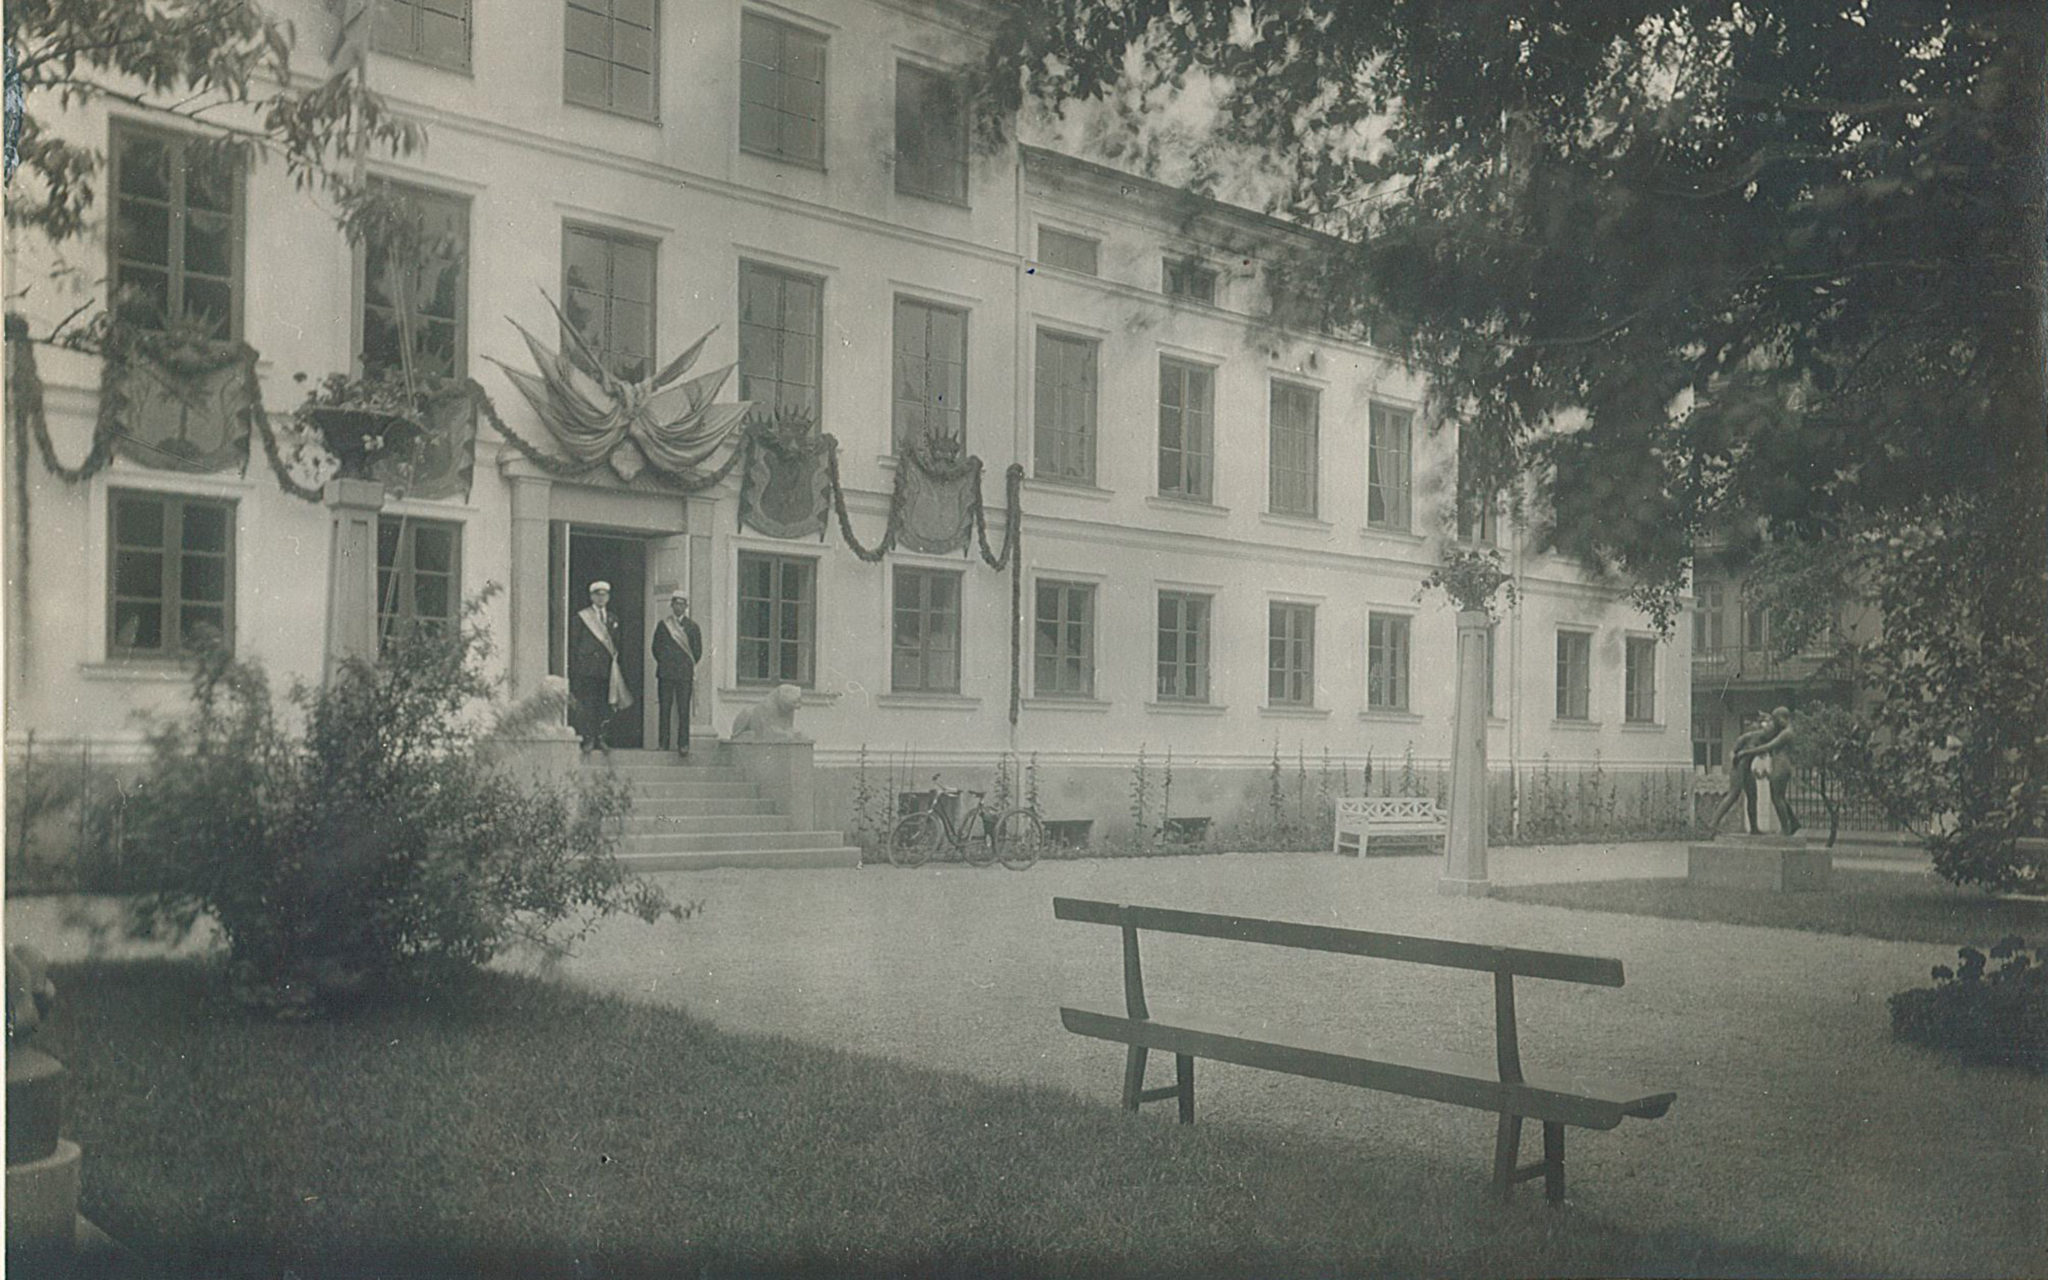 Framsidan av Vita huset 1929, när Kulturens södra område med Vita huset och Allmogehallen invigdes